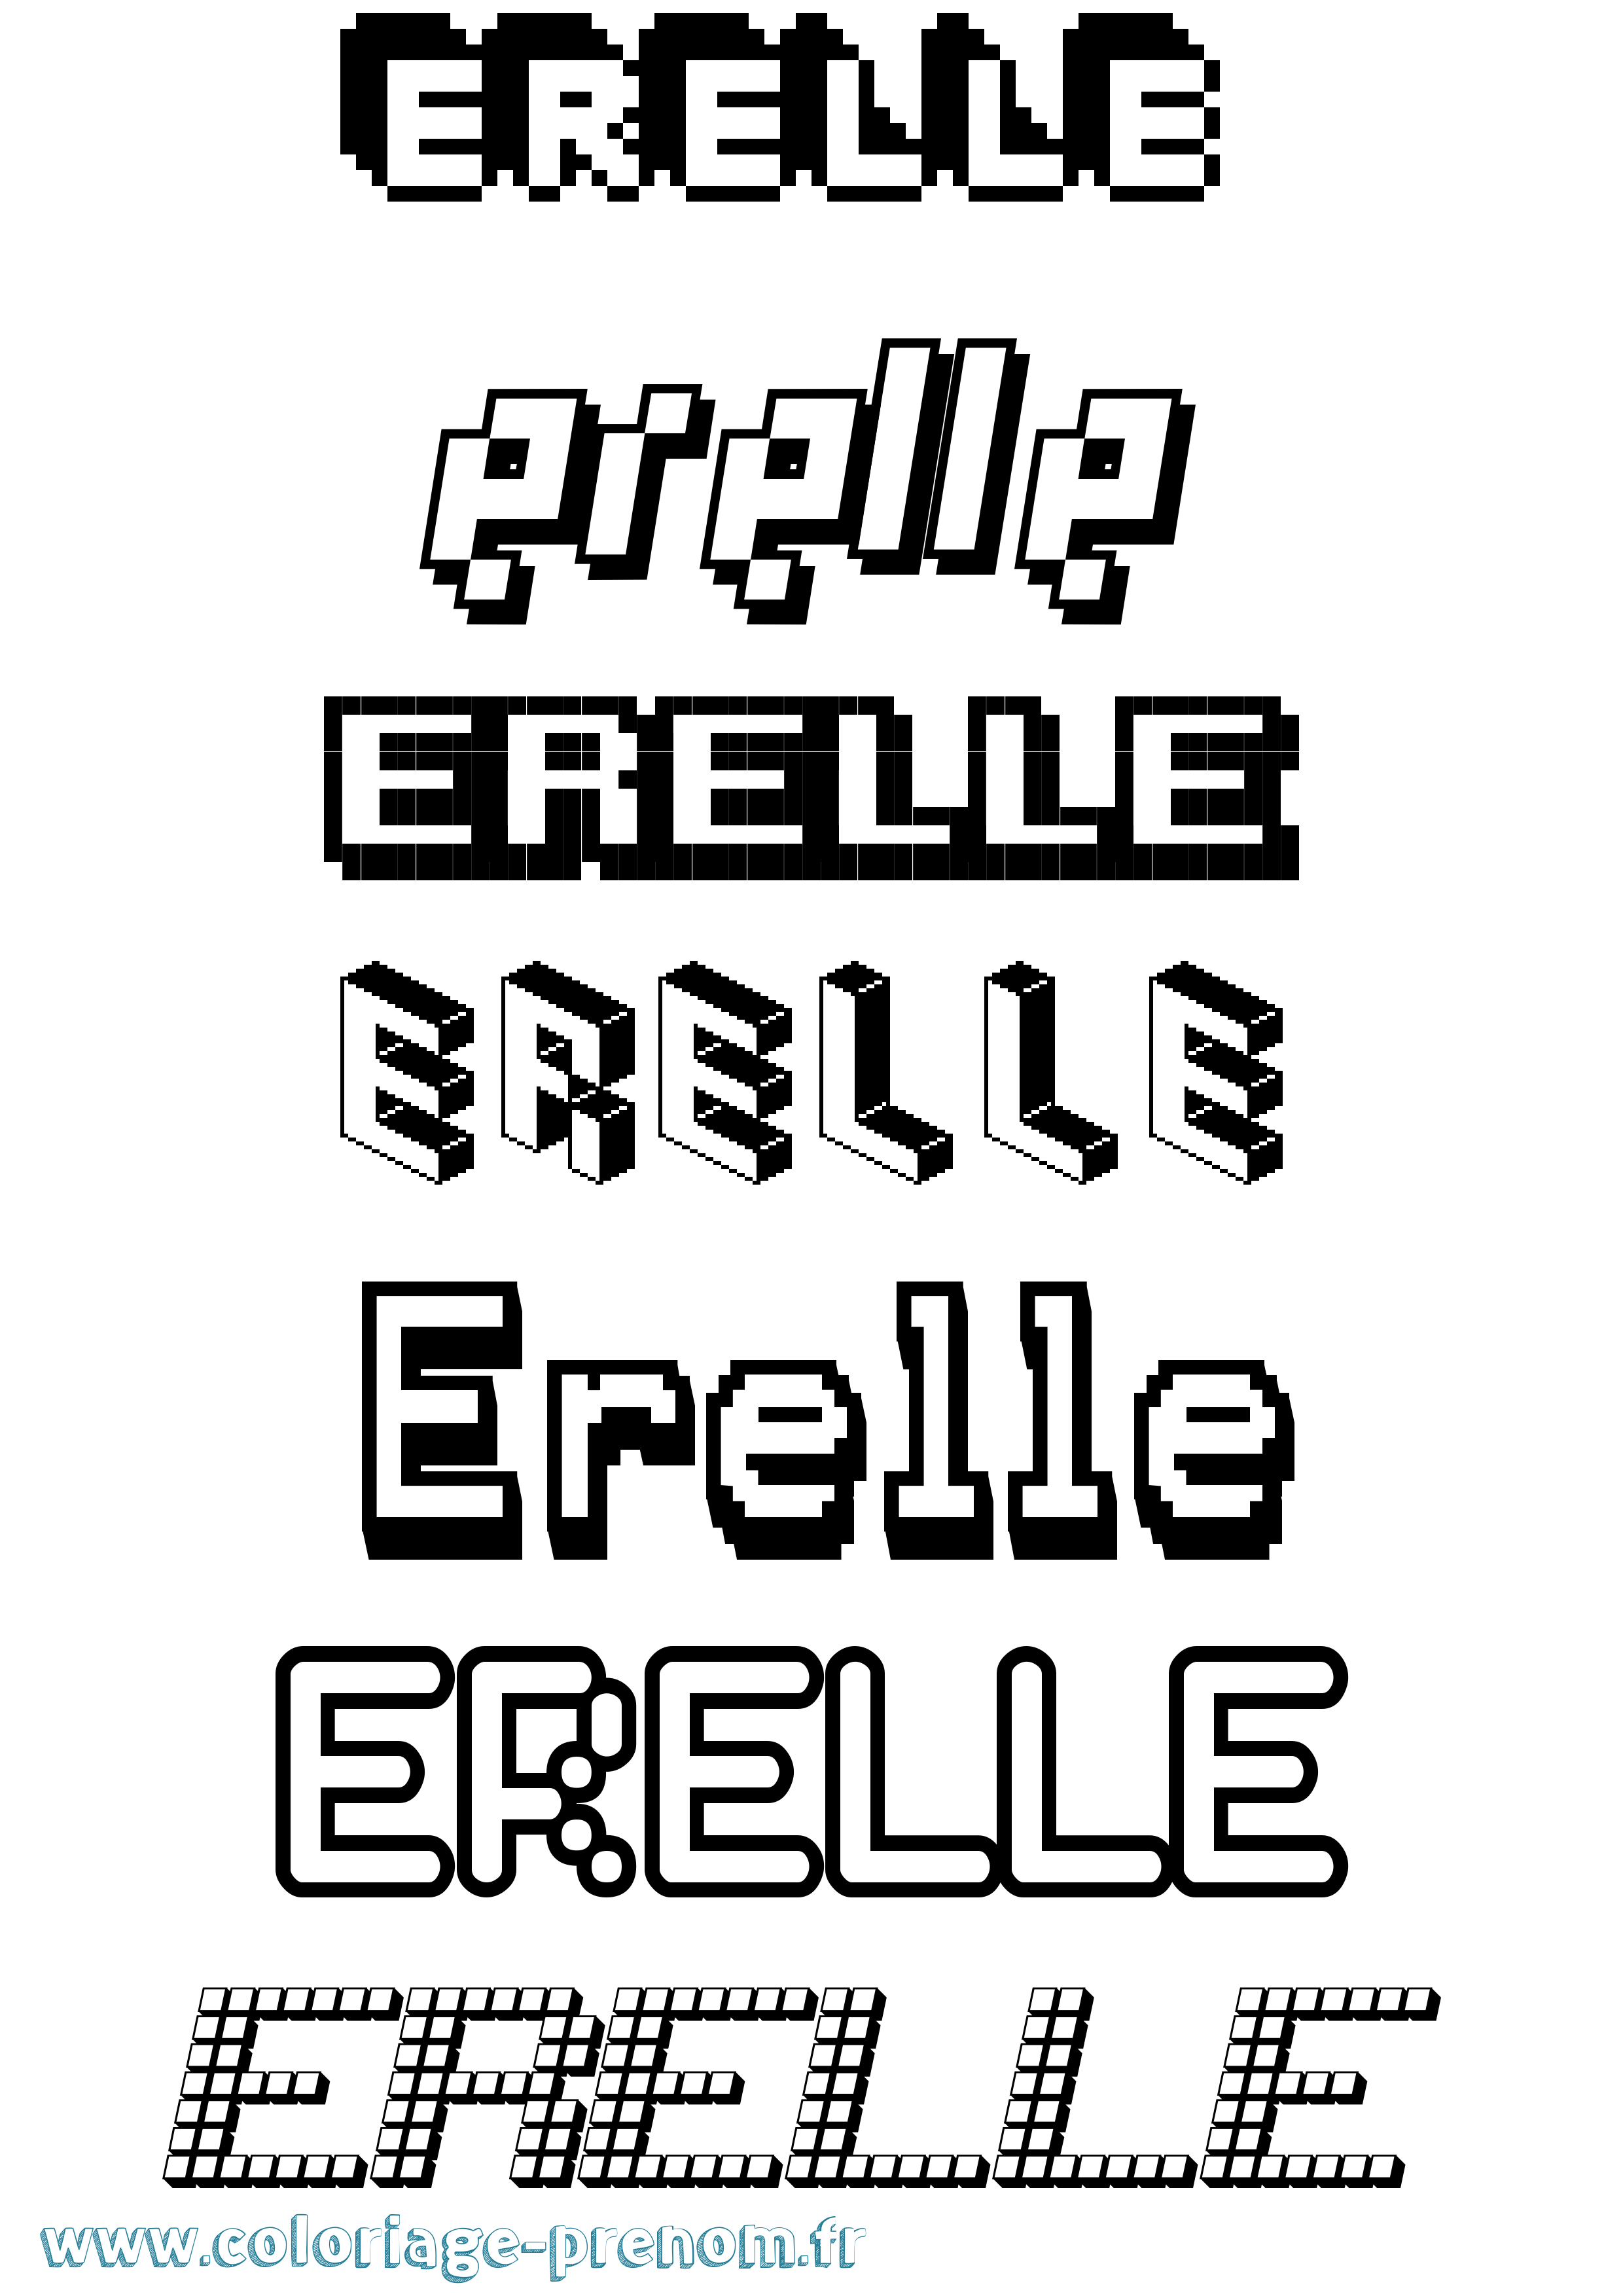 Coloriage prénom Erelle Pixel